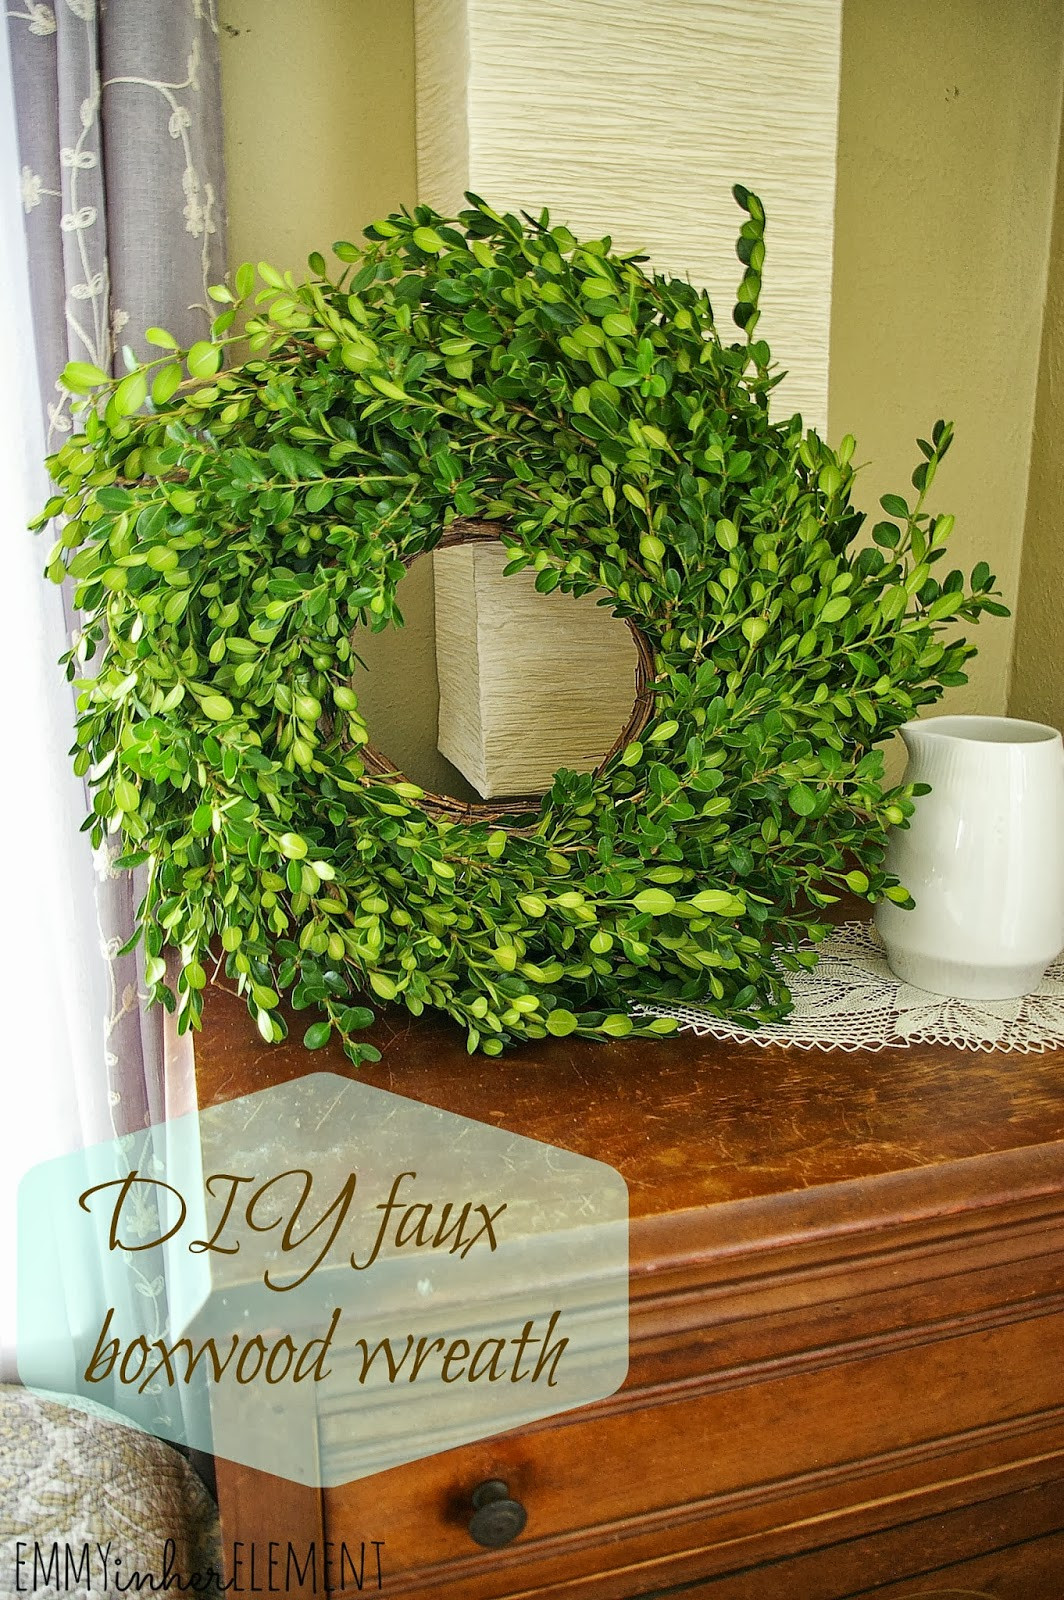 DIY Faux Boxwood Wreath
 Emmy in her Element DIY faux Boxwood Wreath